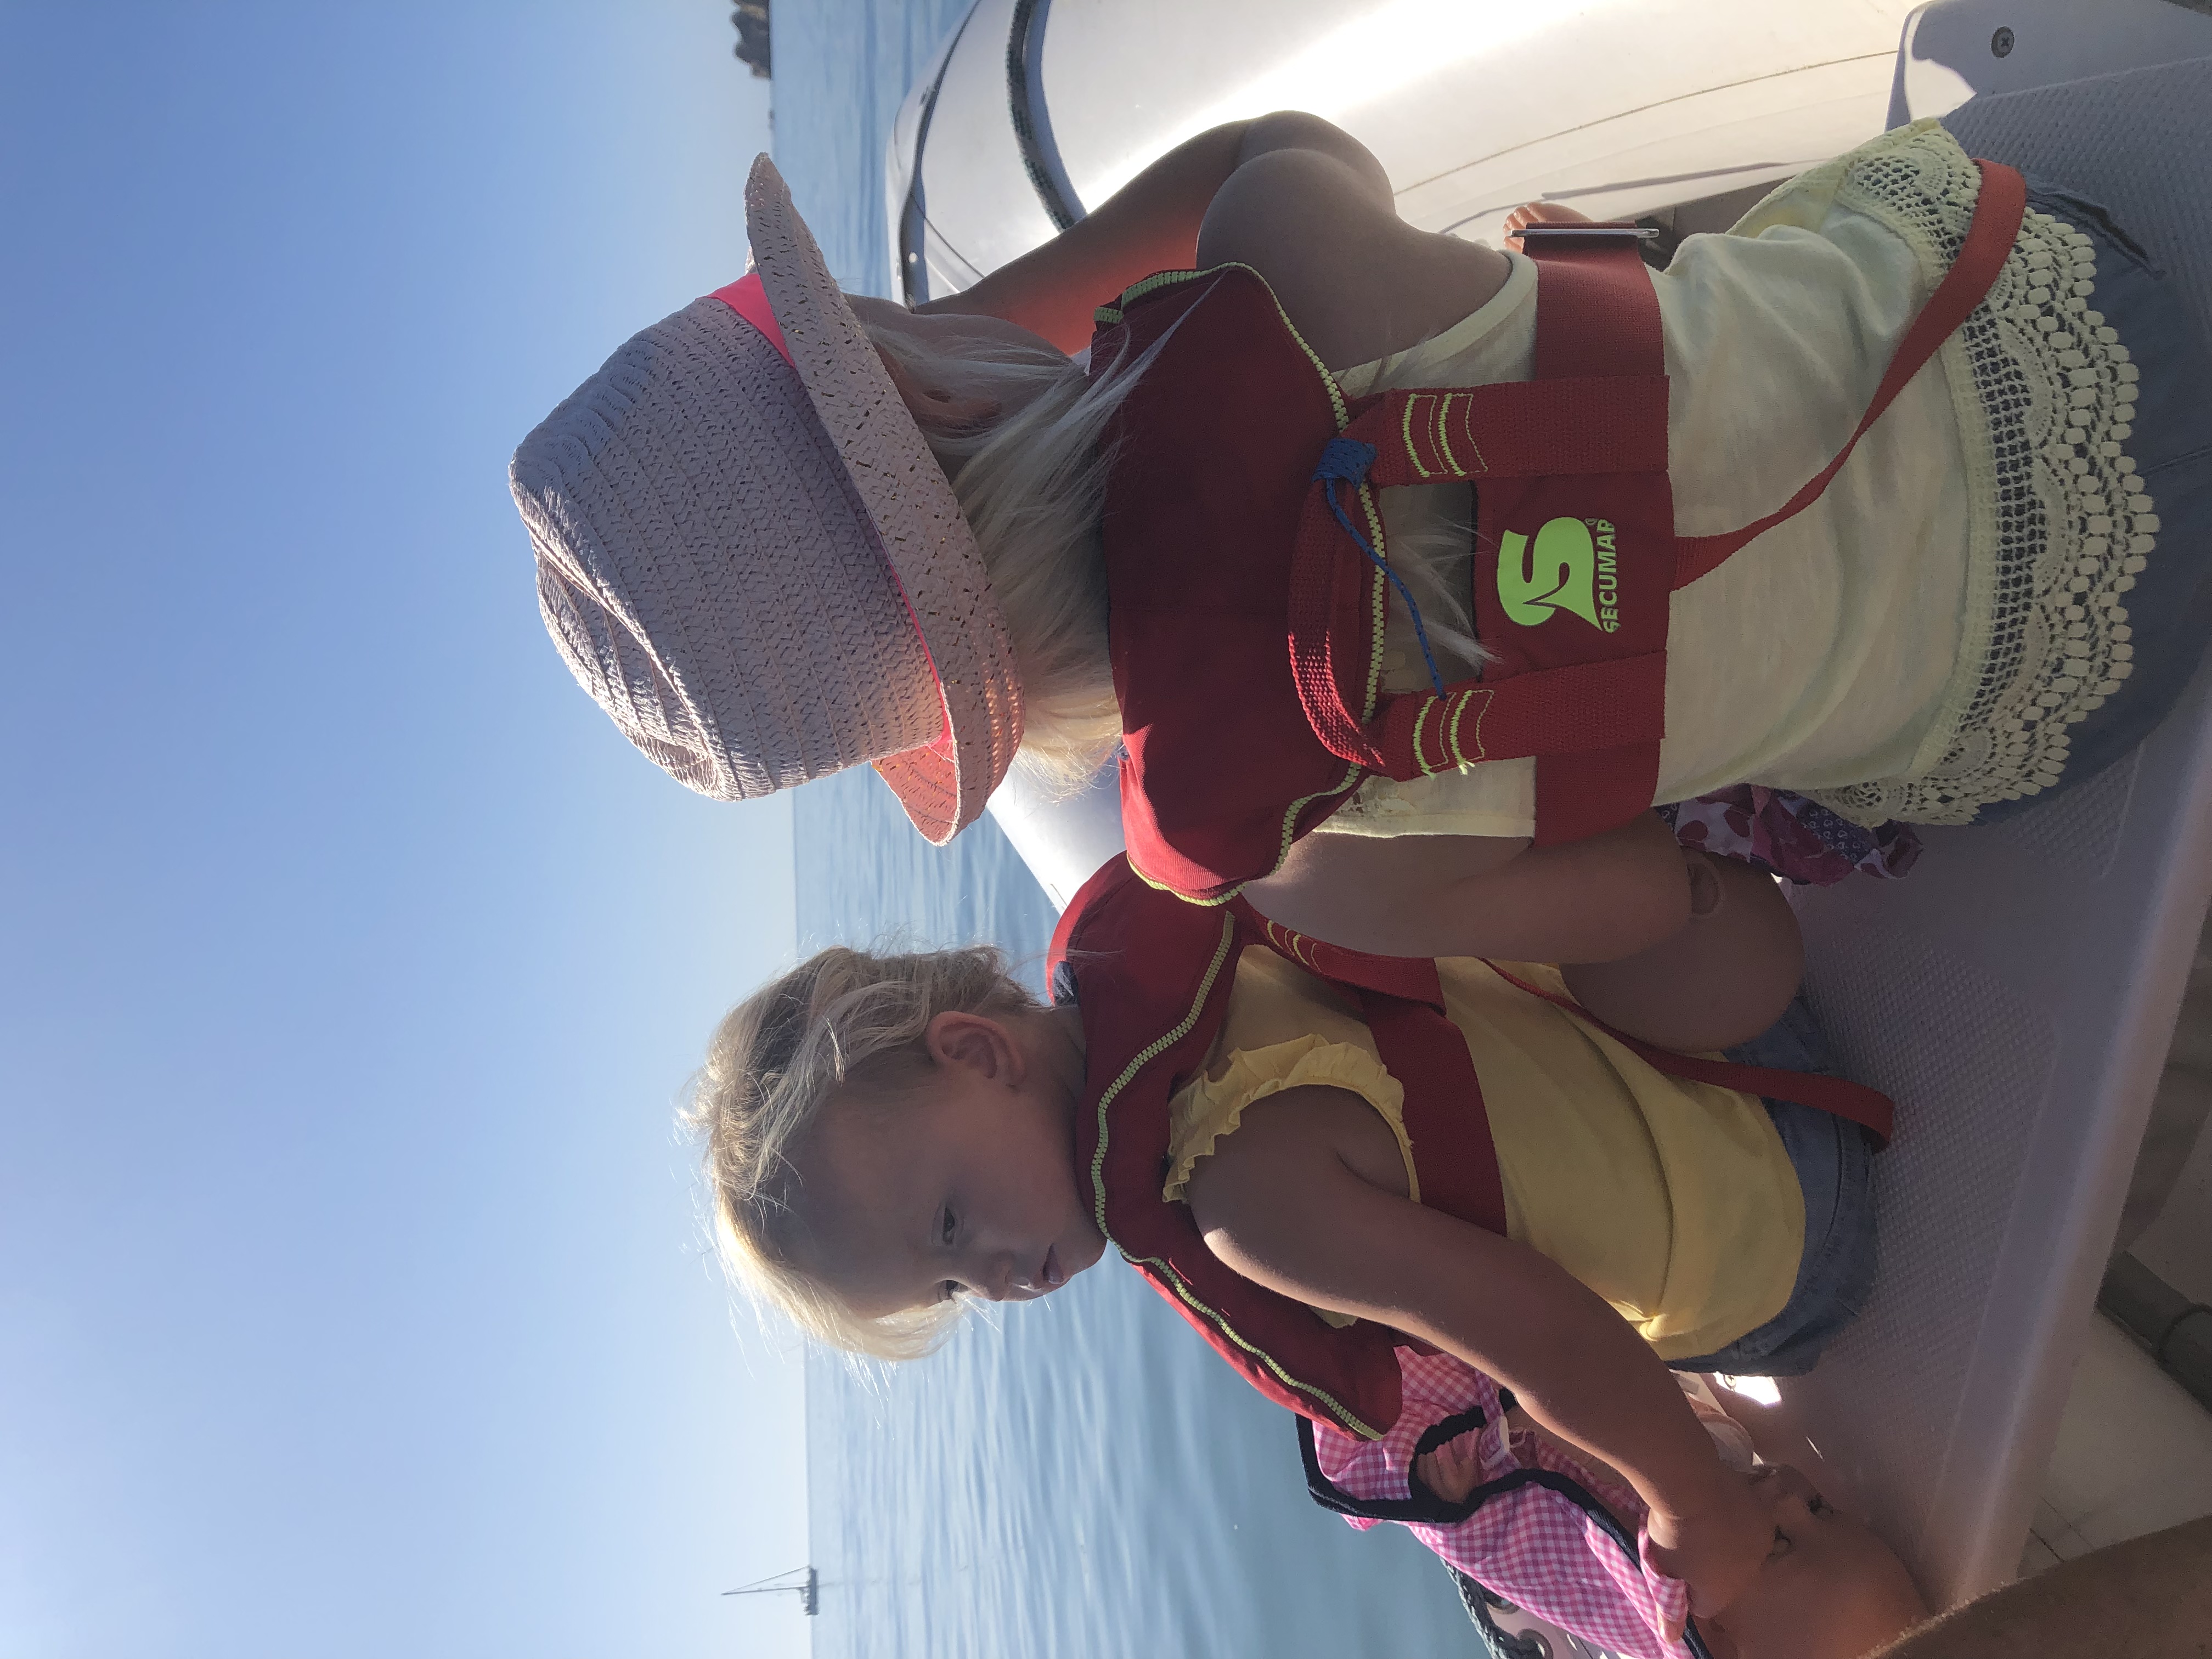 Zeilen varen vertrekken wereld rond reizen boot keven portugal lissabon anker bezoeken vrienden zwemmen bijboot